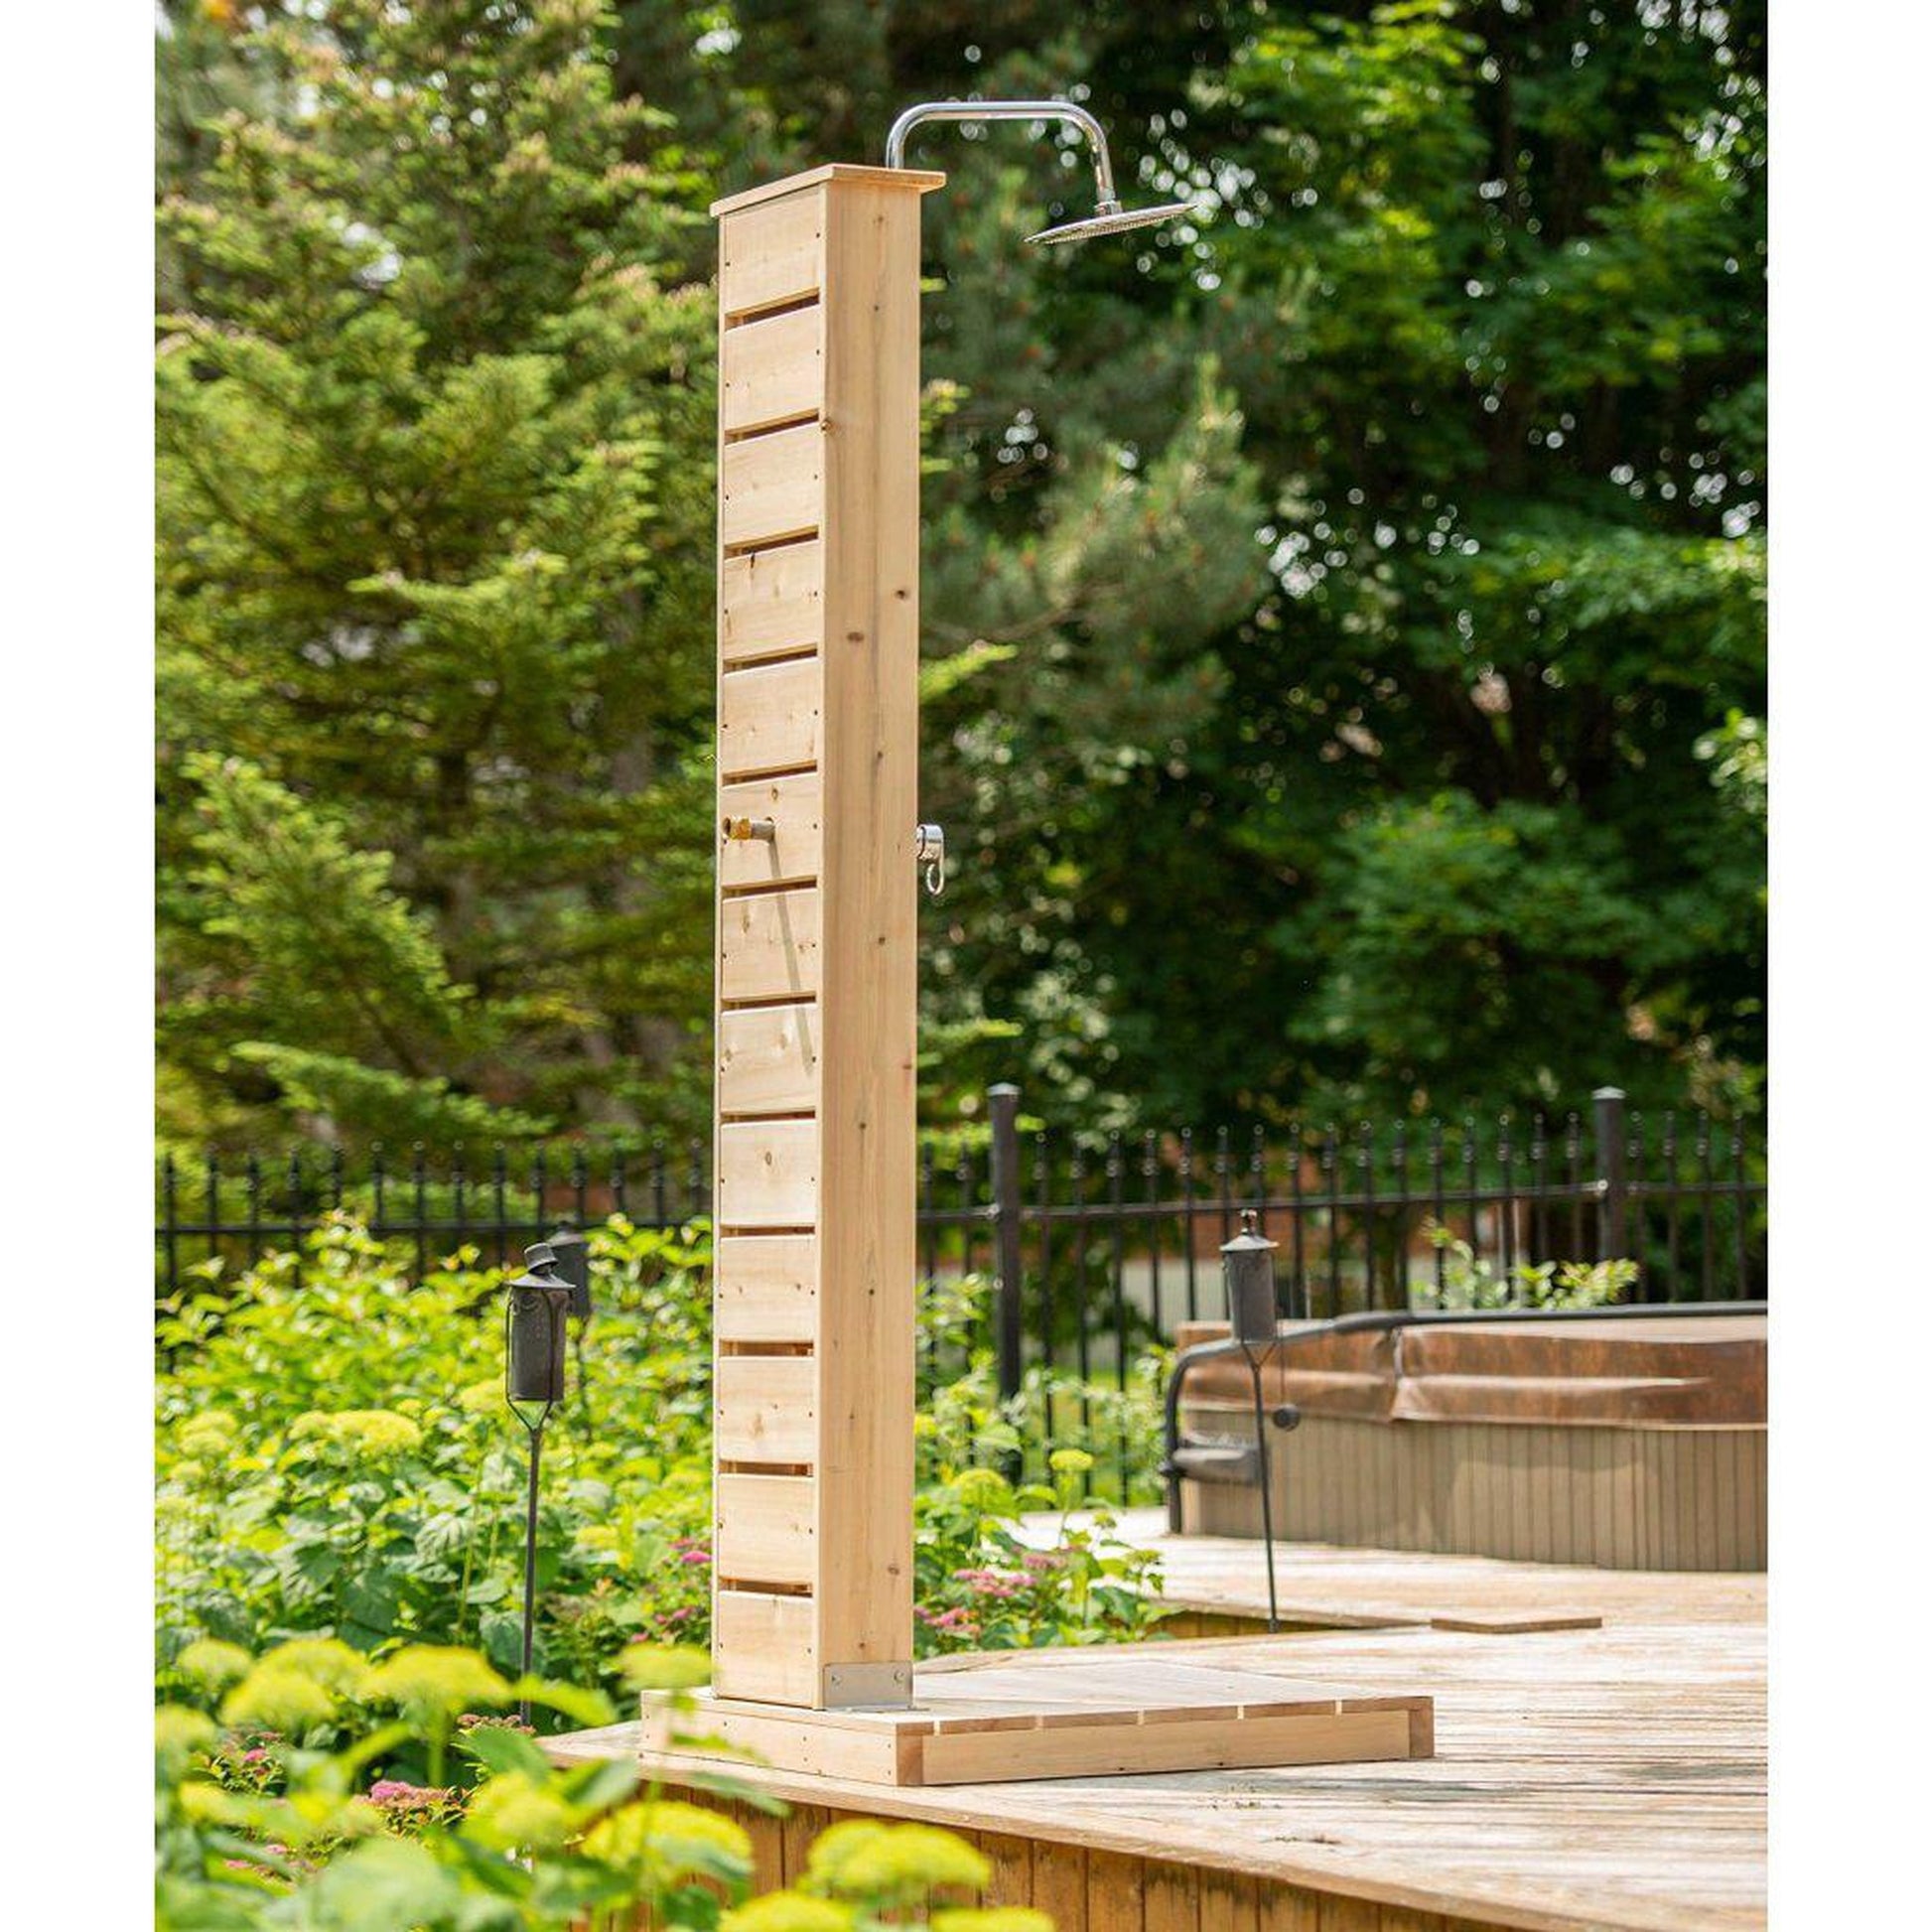 Dundalk LeisureCraft Canadian Timber Sierra Pillar Outdoor Shower